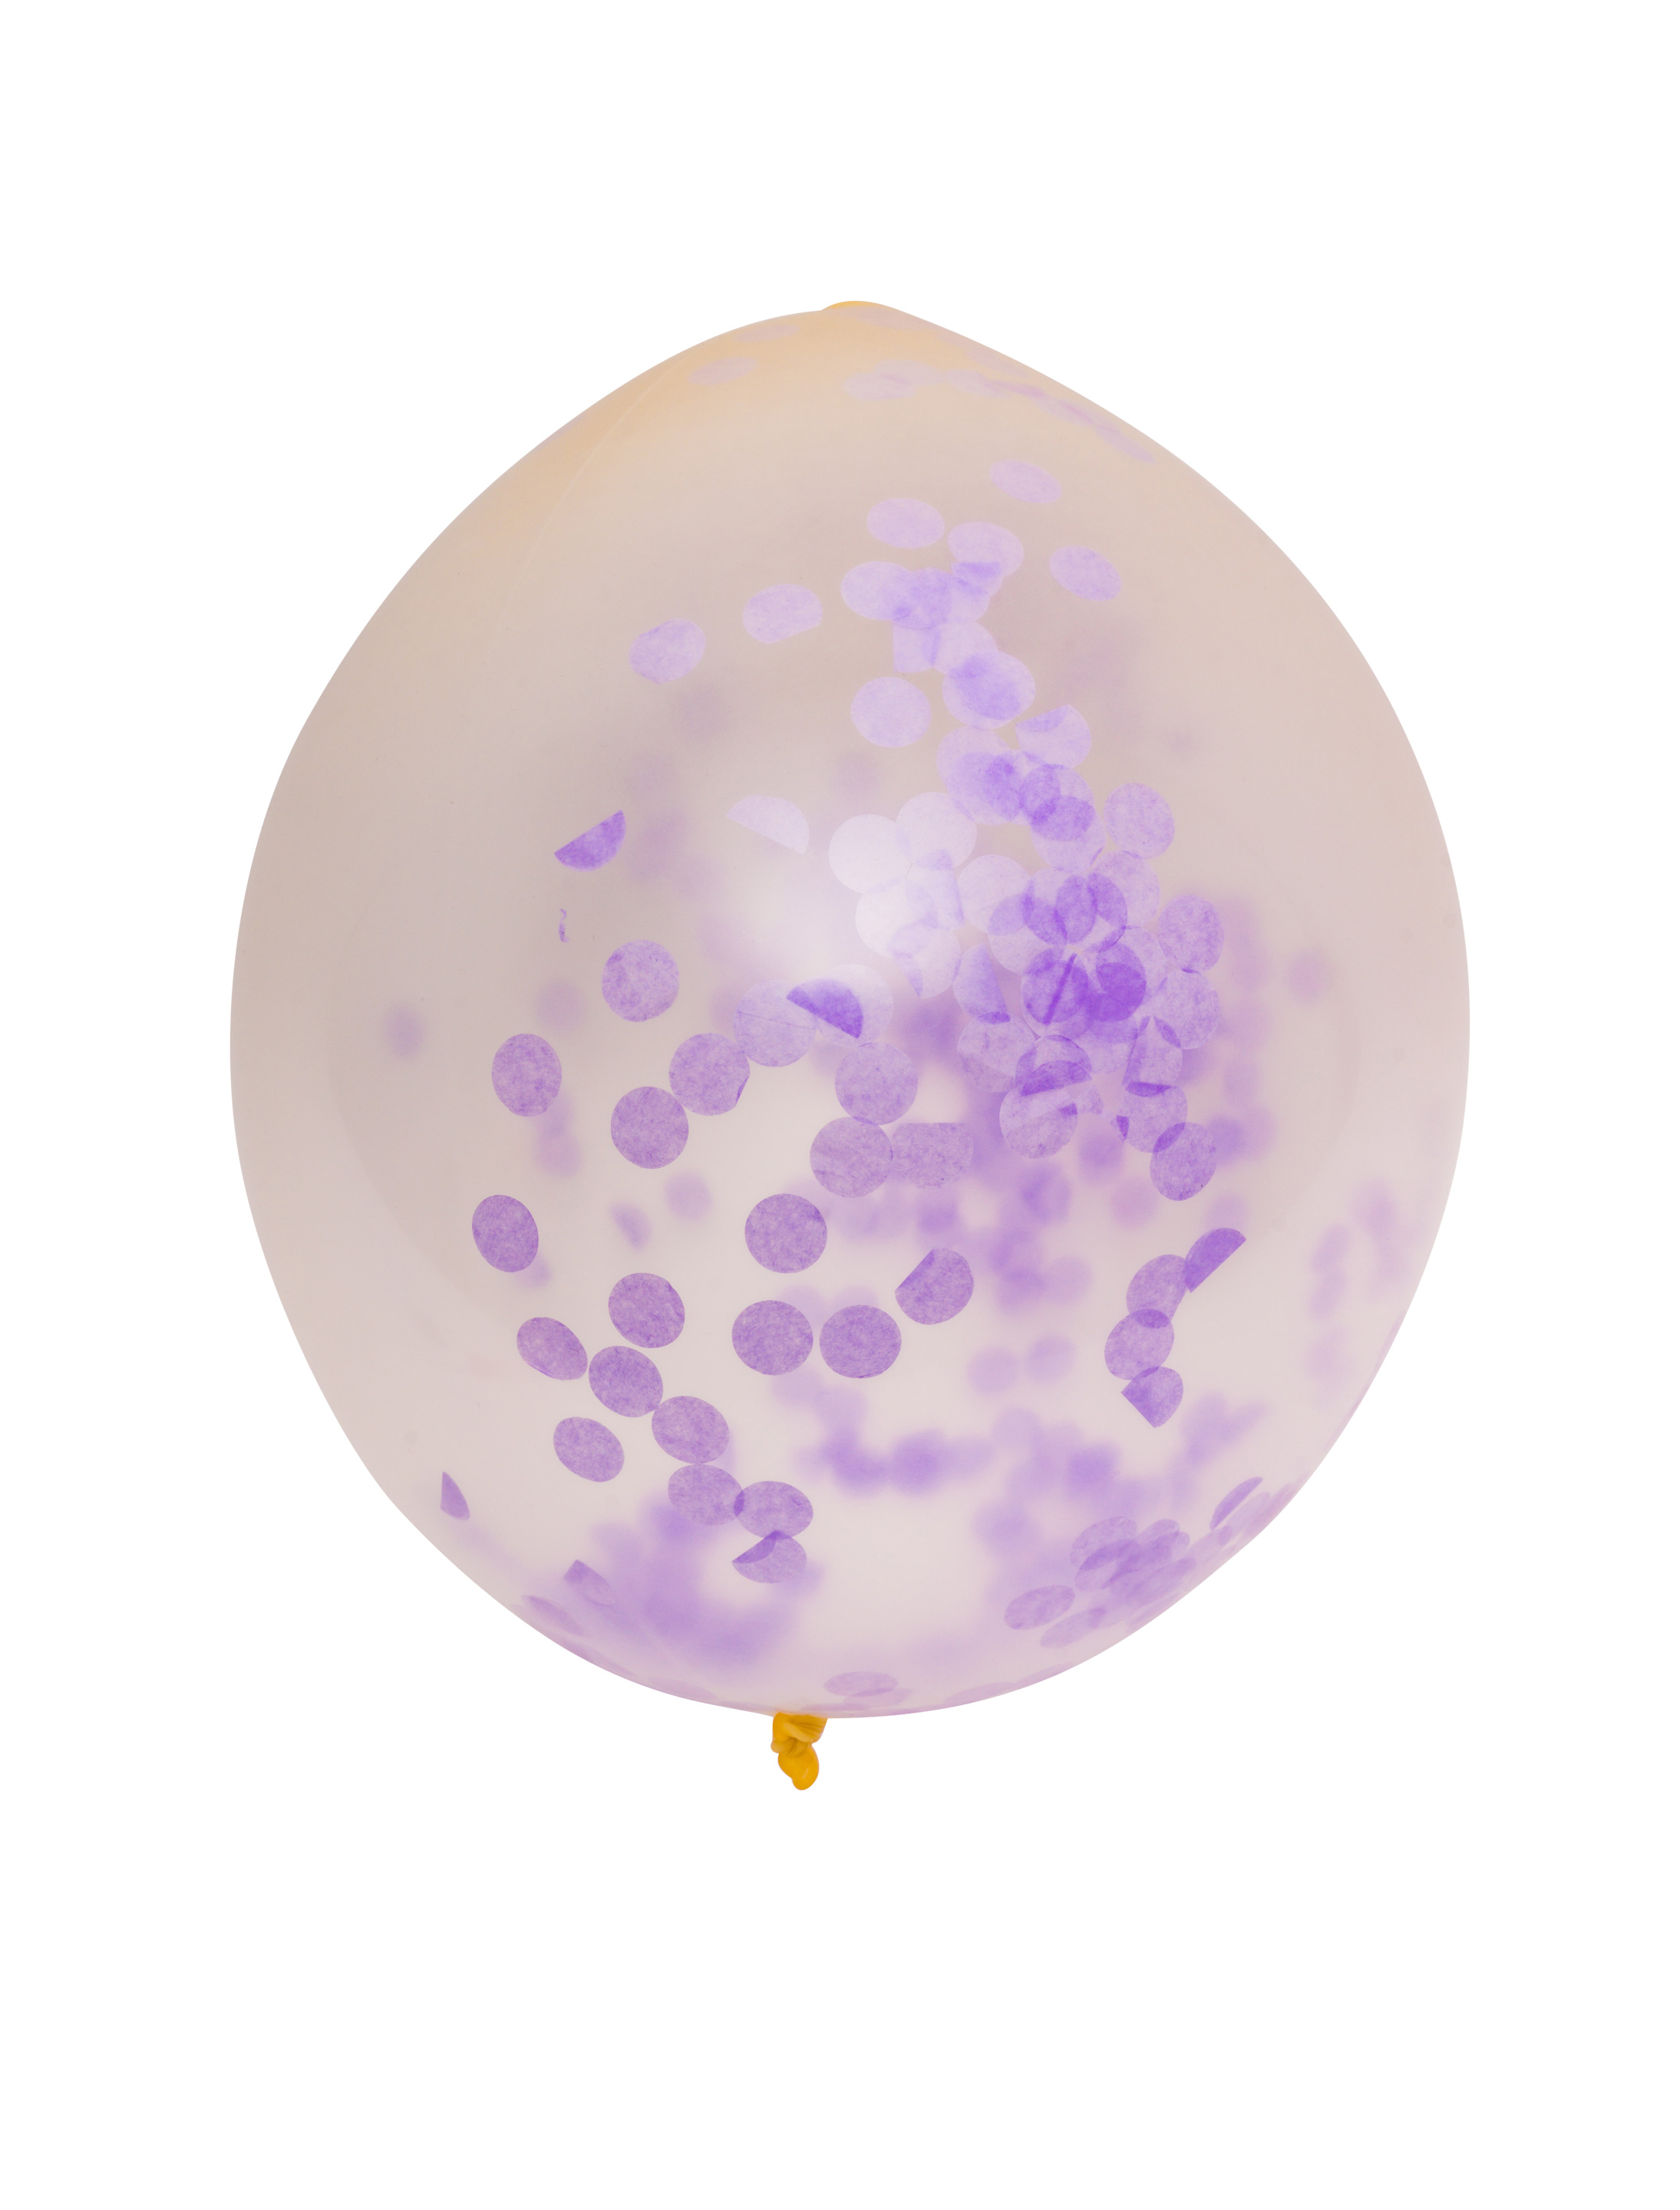 Ballon gefüllt mit Konfetti lila